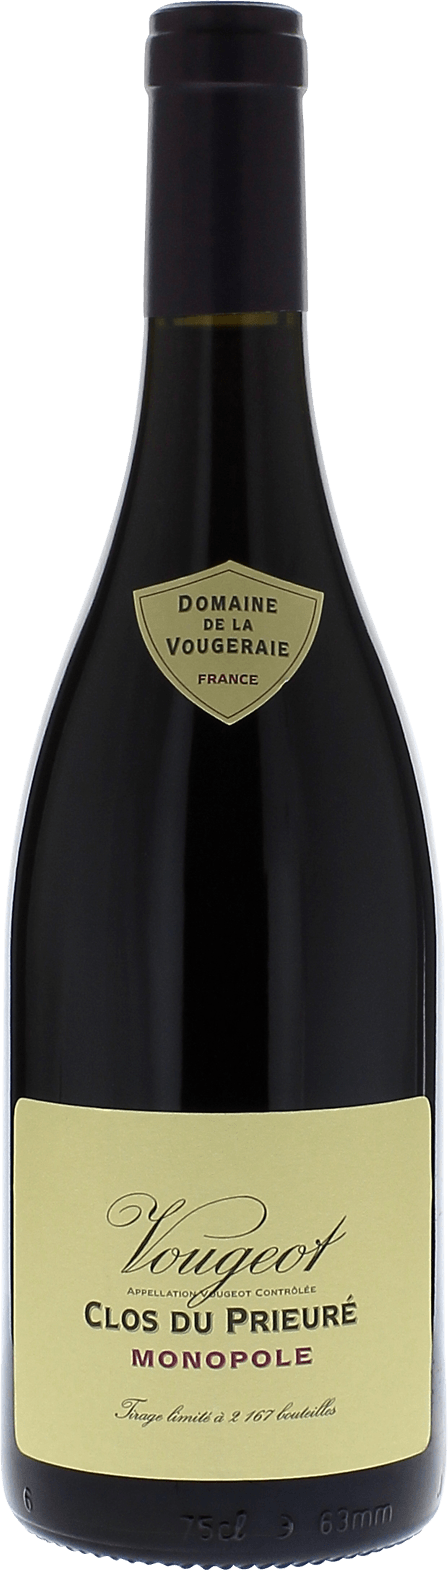 Vougeot clos du prieur 2017 Domaine VOUGERAIE, Bourgogne rouge